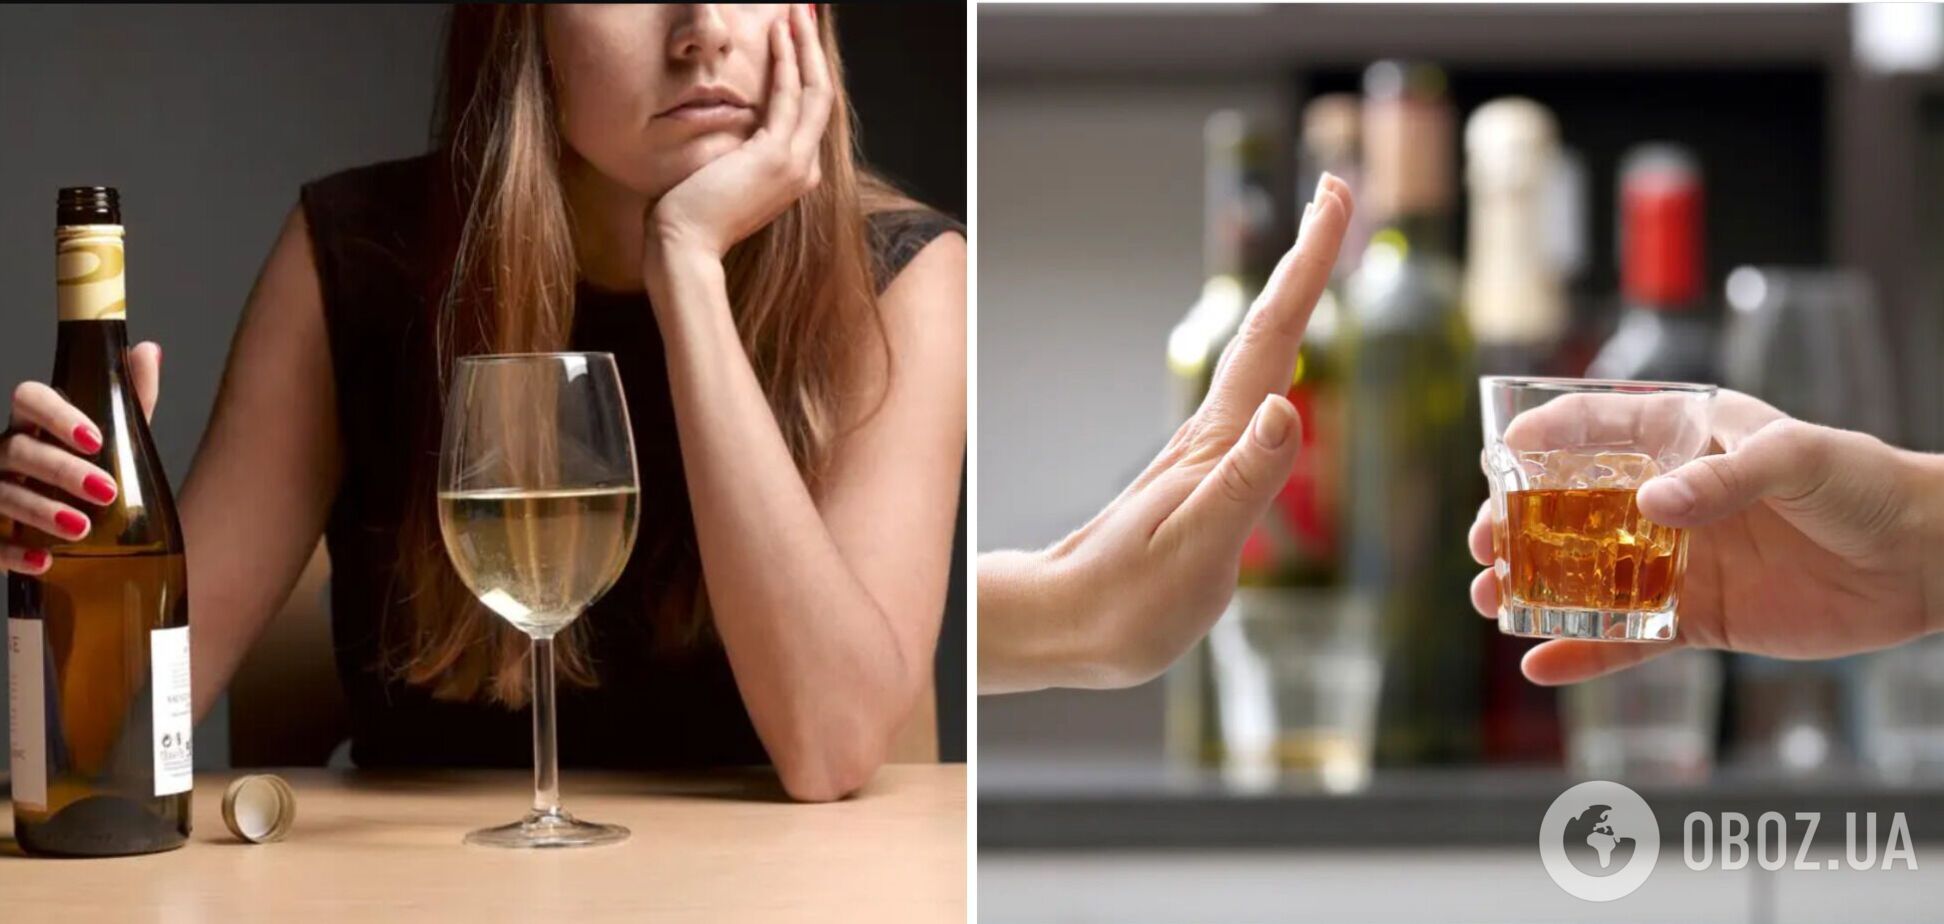 Что произойдет с телом в случае отказа от алкоголя в месяц: некоторые изменения могут удивить